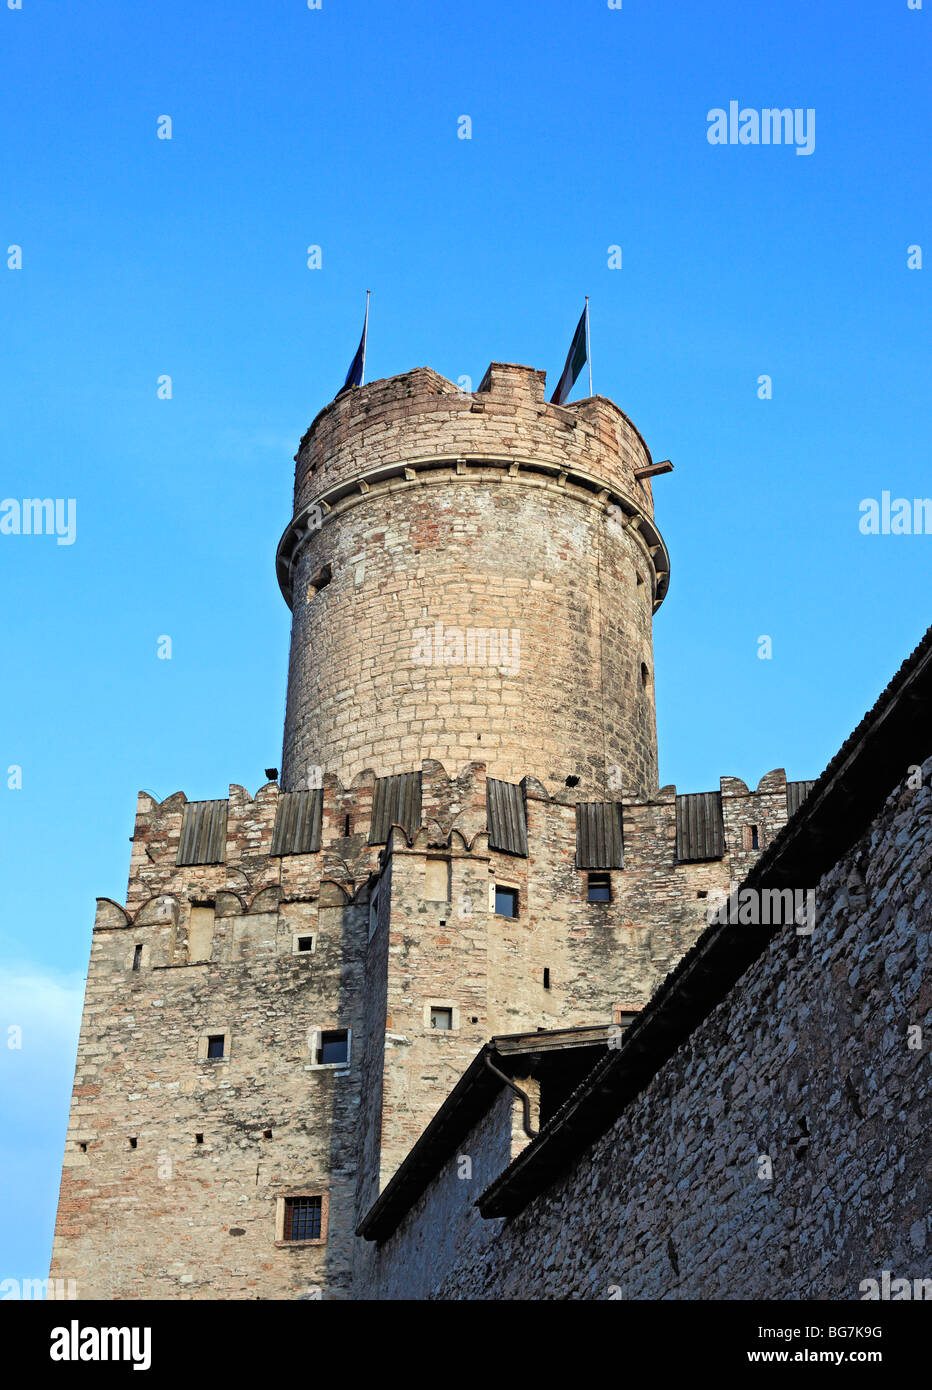 Castello del Buonconsiglio, Trento, Trentino-Alto Adige, Italy Stock Photo